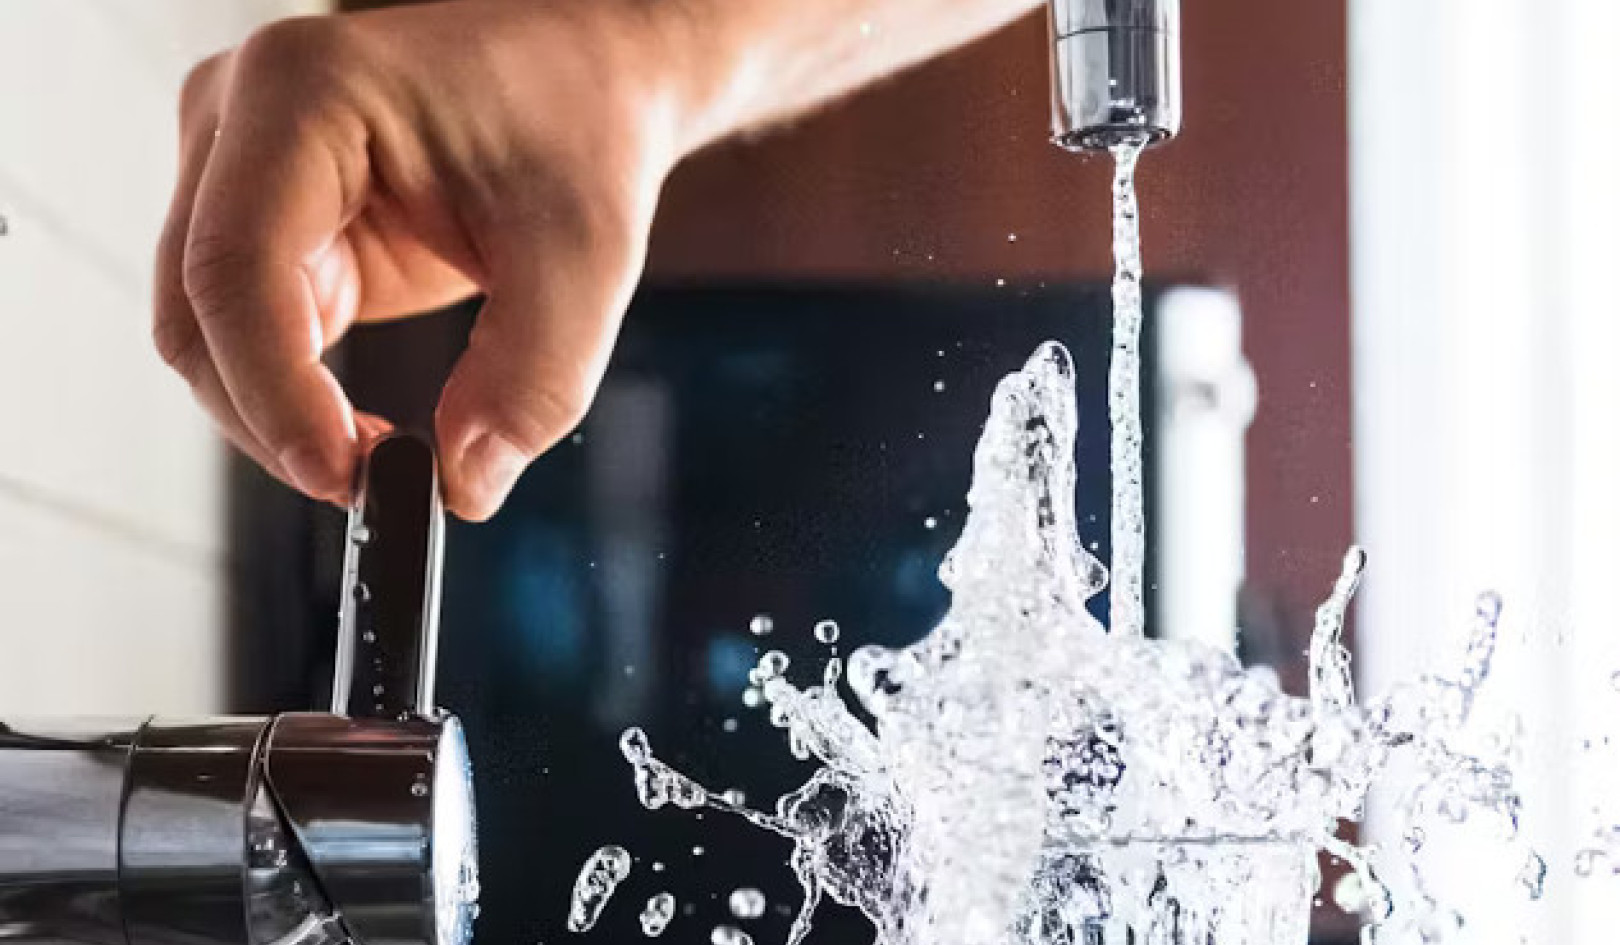 过滤掉有害的“永久化学物质”：净化饮用水的方法